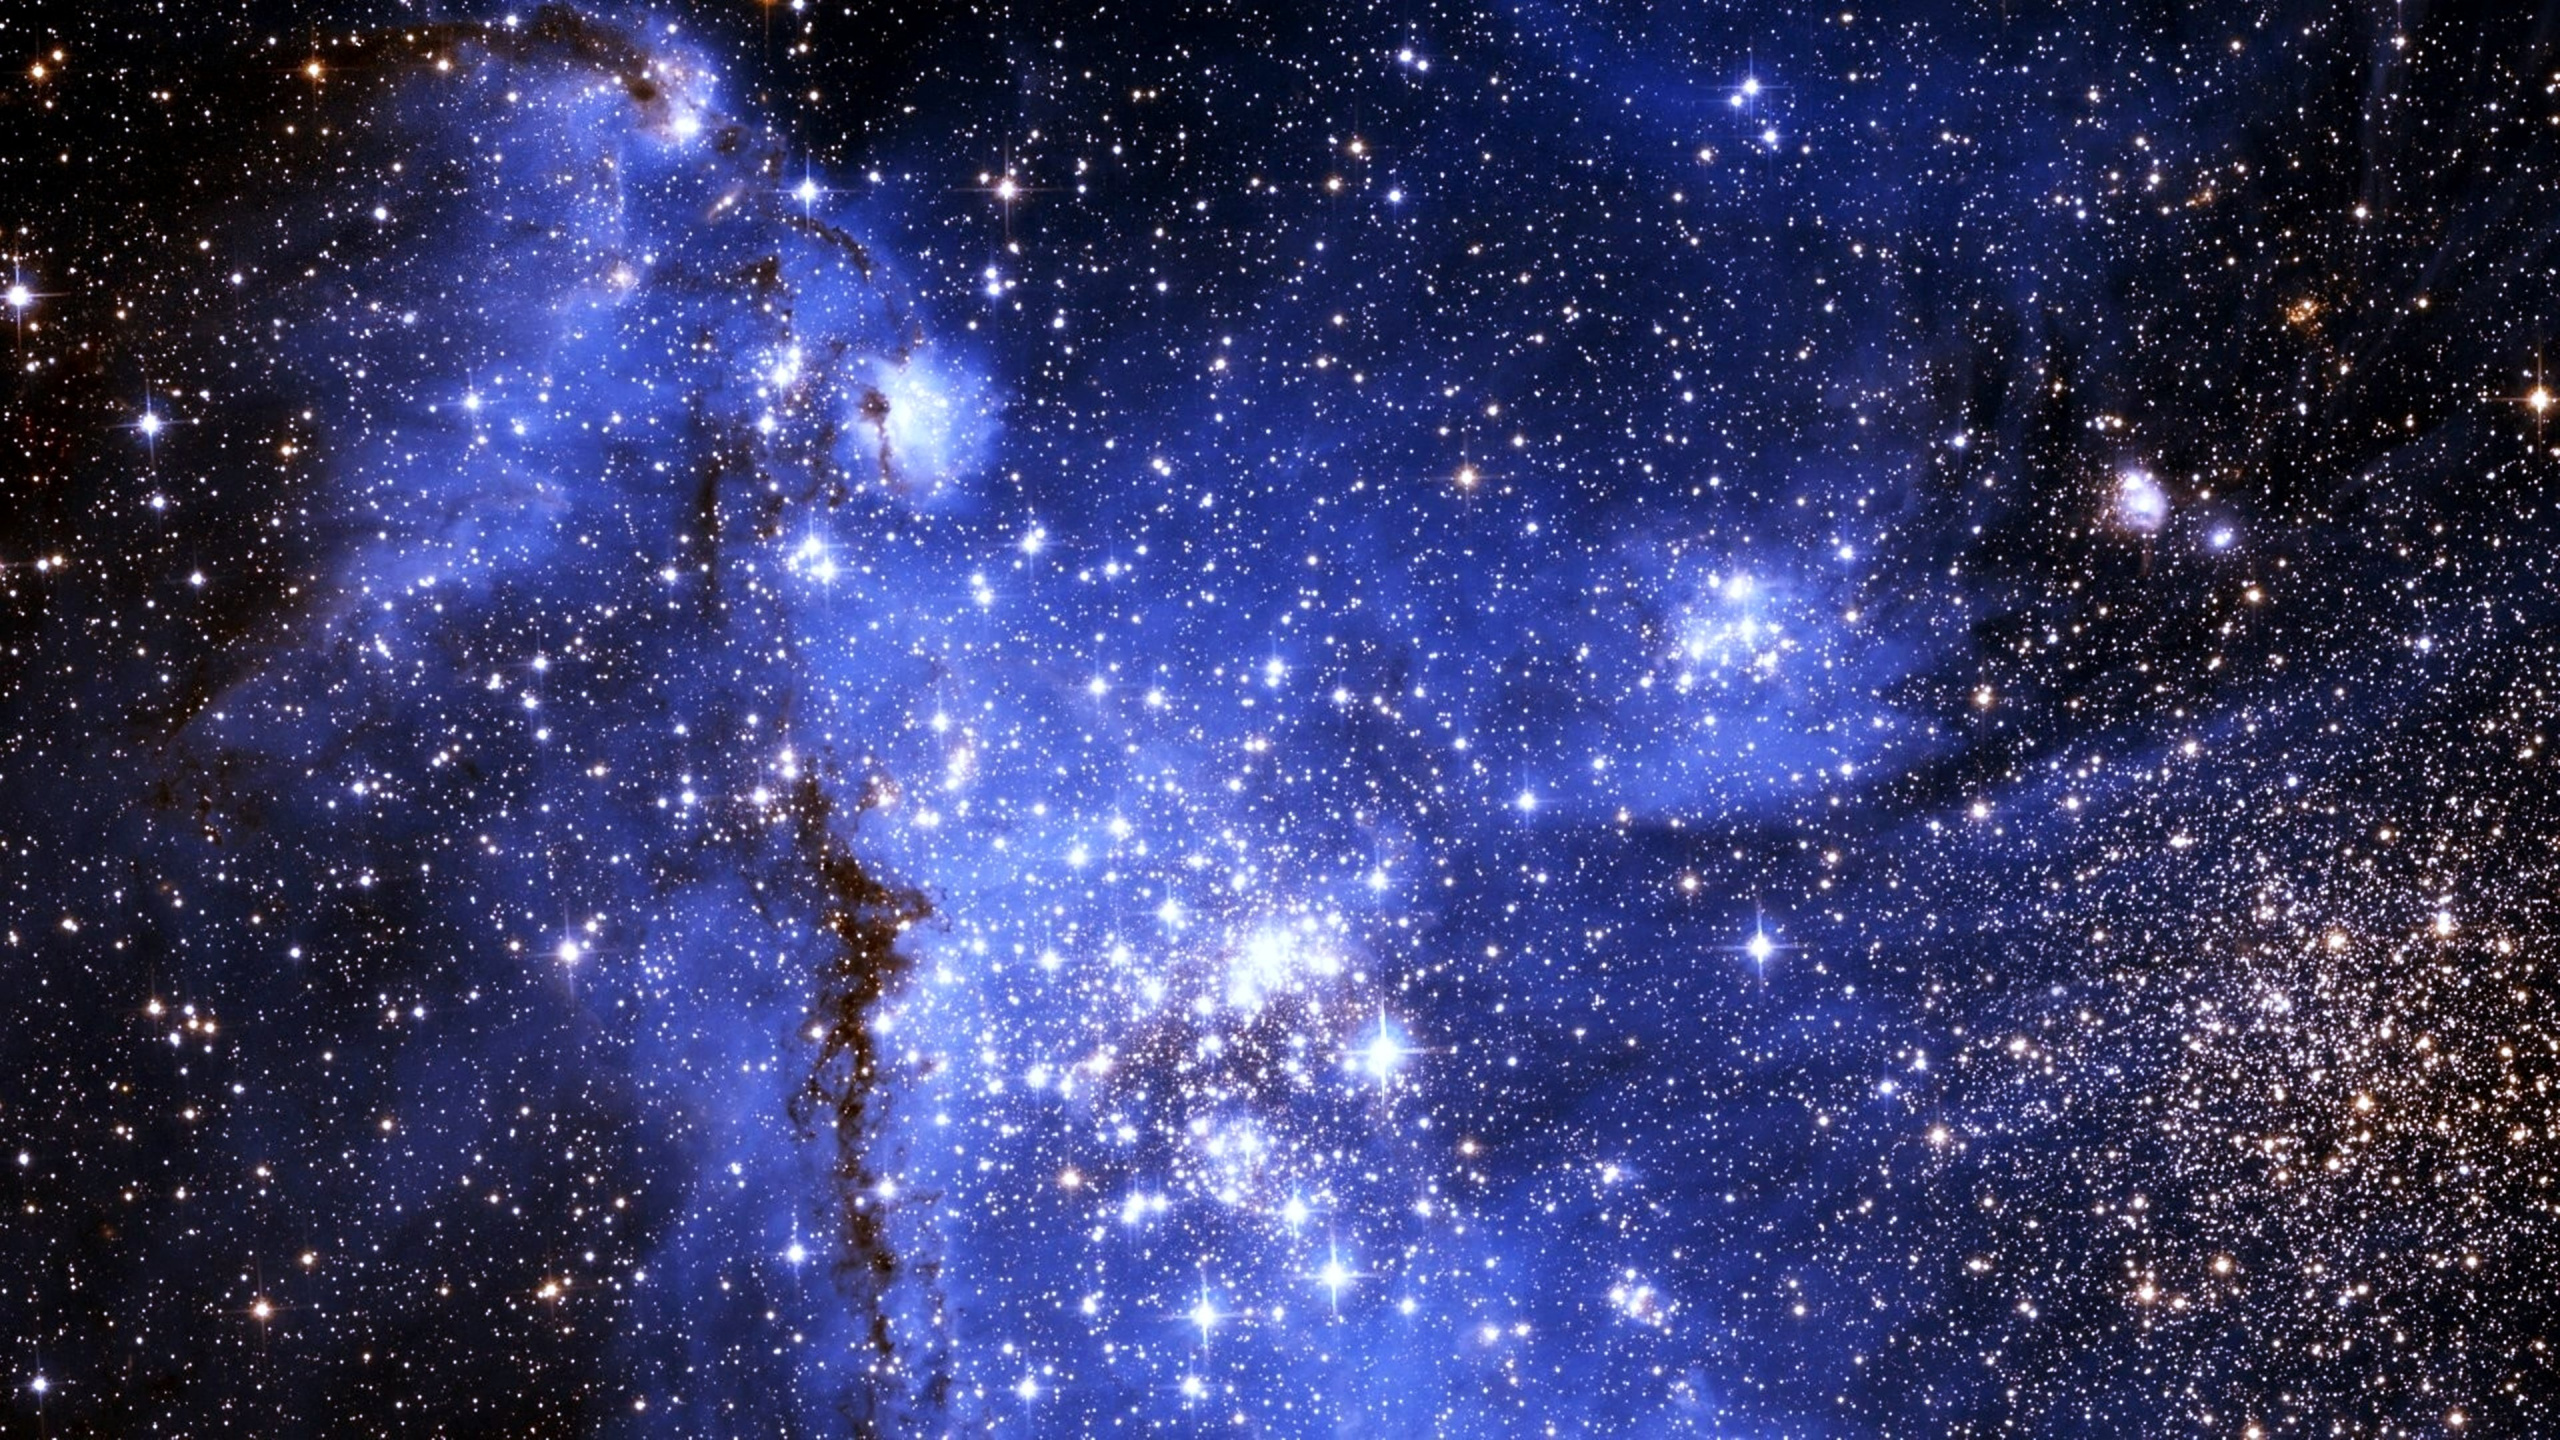 明星, 天文学, 宇宙, 银河系, 外层空间 壁纸 2560x1440 允许